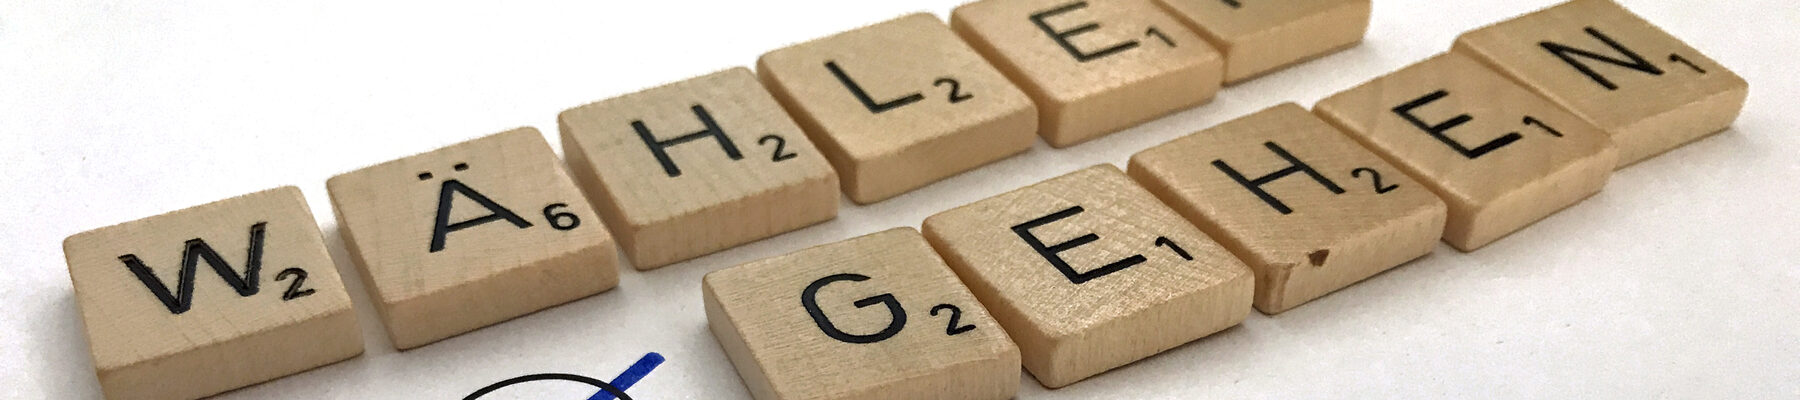 Mit Buchstaben-Plättchen eines Scrabble-Spiels gelegte Worte Wählen gehen mit Kreuz in einem Feld